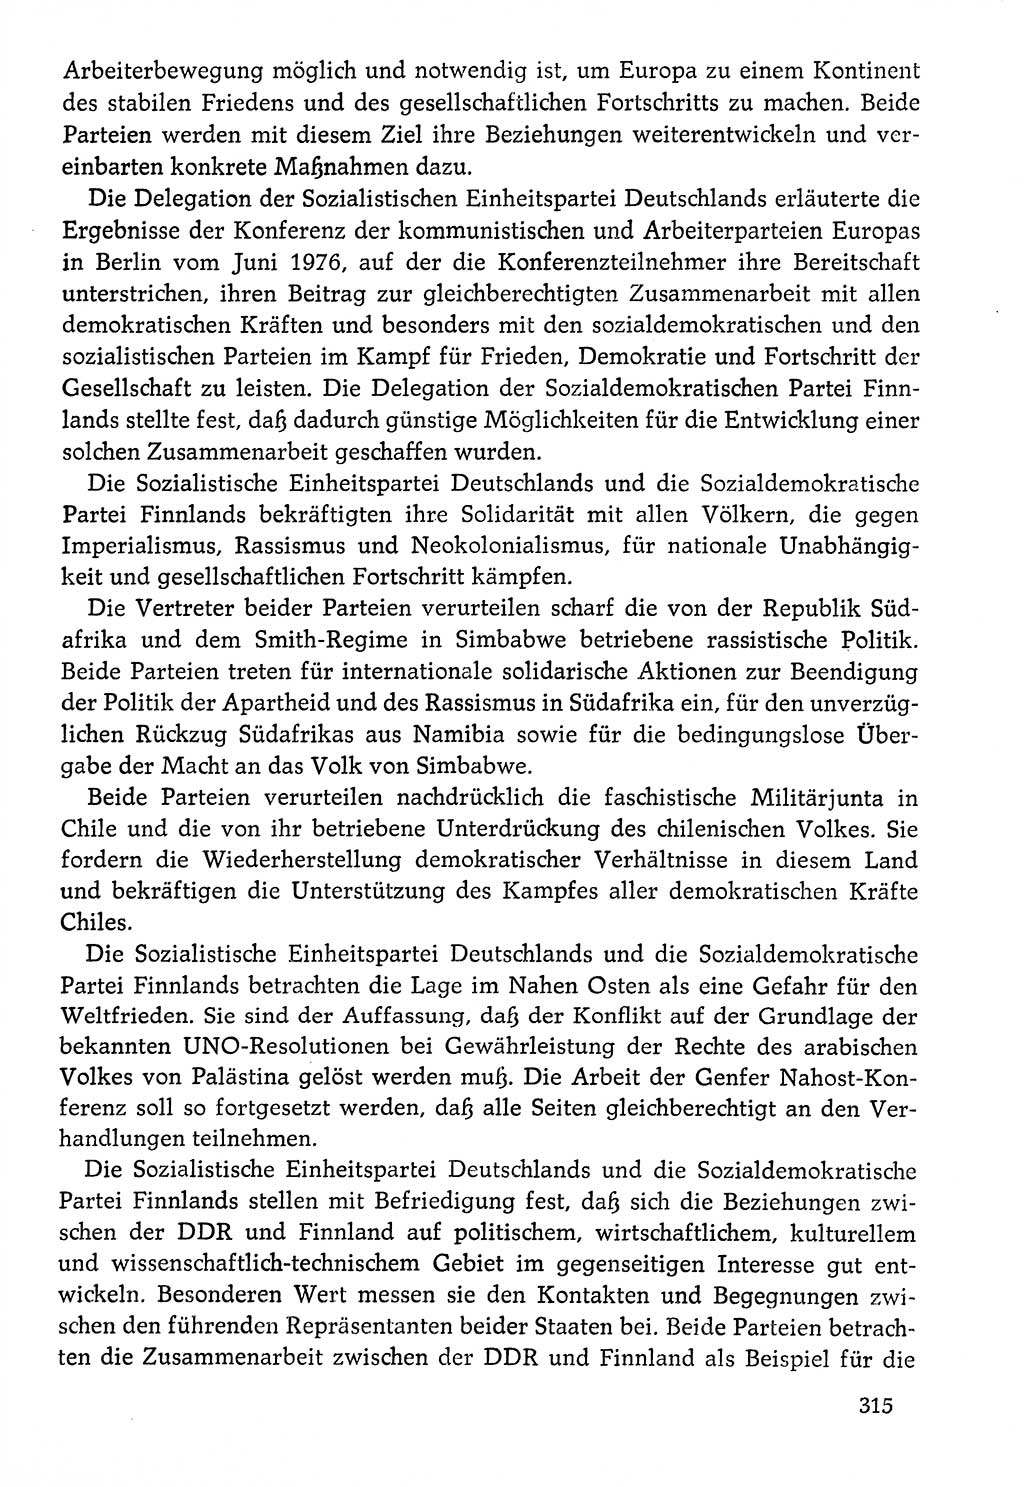 Dokumente der Sozialistischen Einheitspartei Deutschlands (SED) [Deutsche Demokratische Republik (DDR)] 1976-1977, Seite 315 (Dok. SED DDR 1976-1977, S. 315)